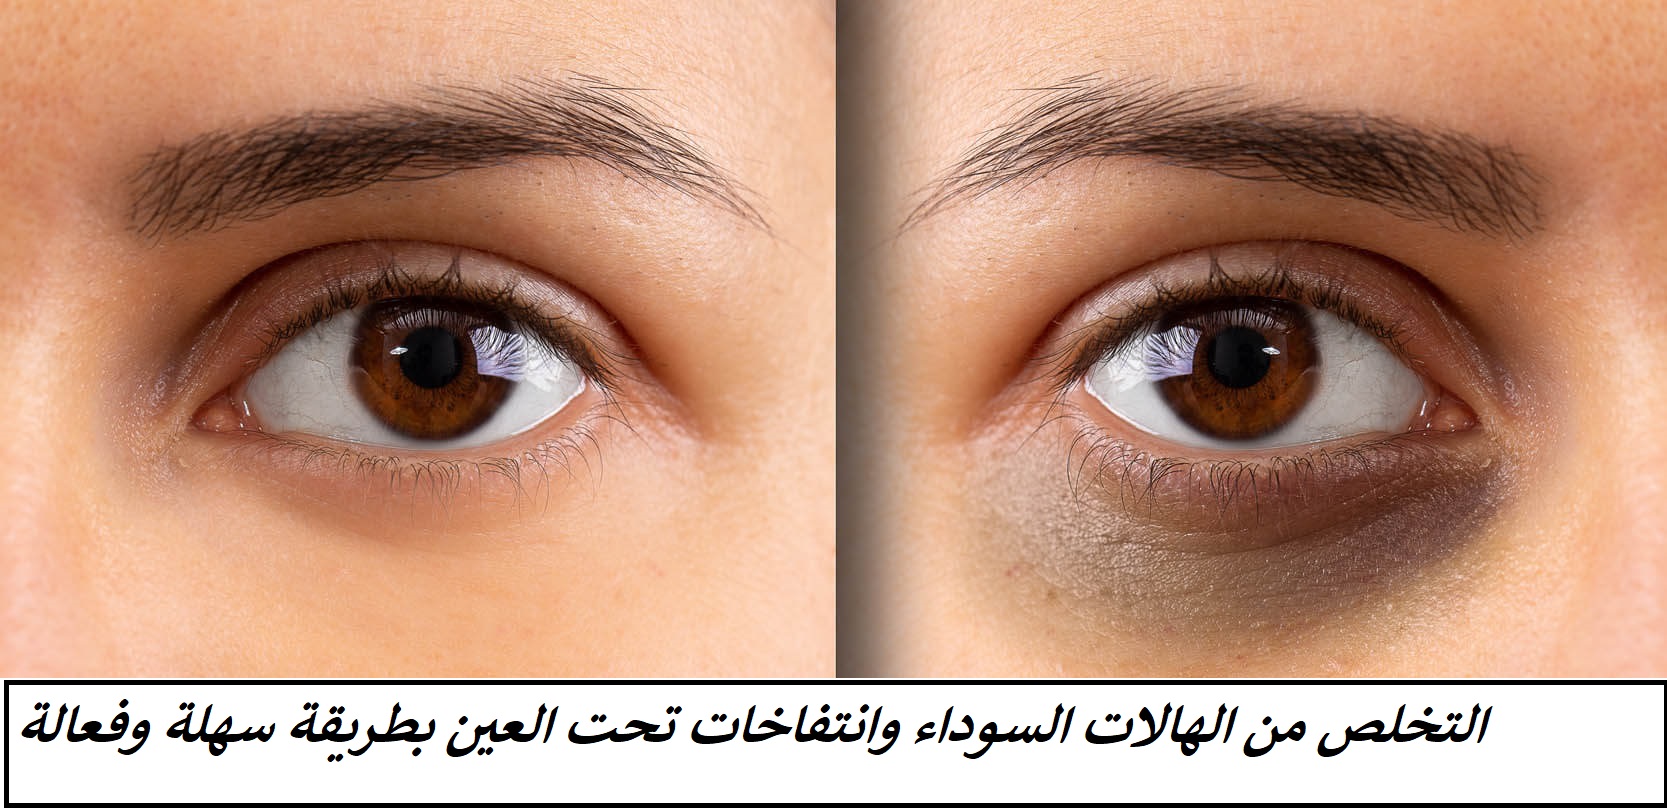 وصفة سحرية جبارة للتخلص من الهالات السوداء تحت العين والانتفاخات حول العين